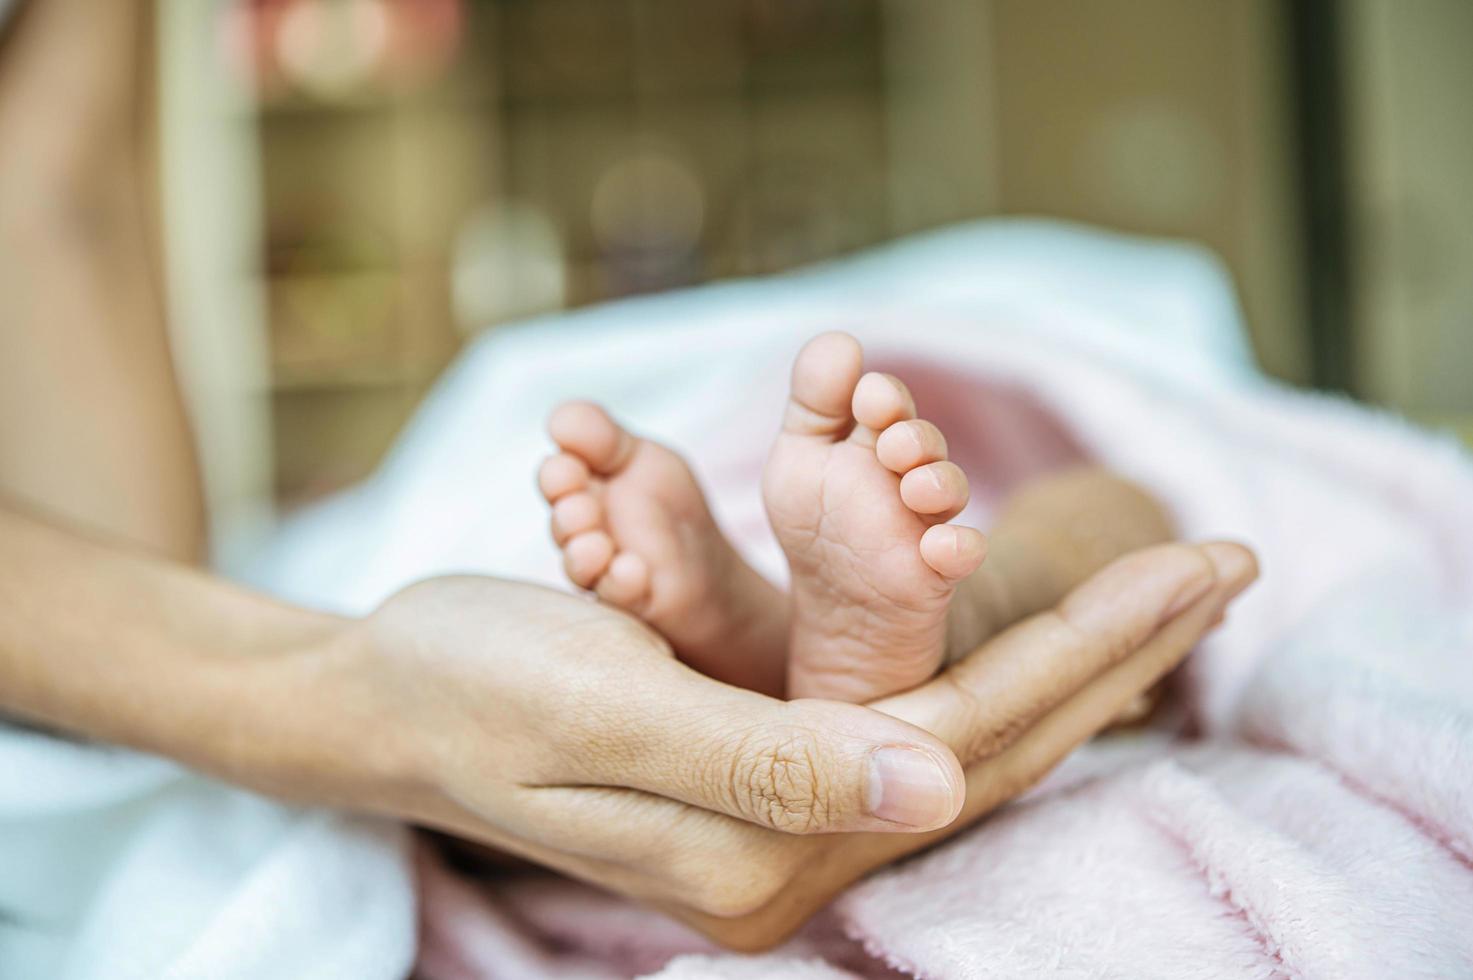 nyfödda baby fötter på mors hand foto